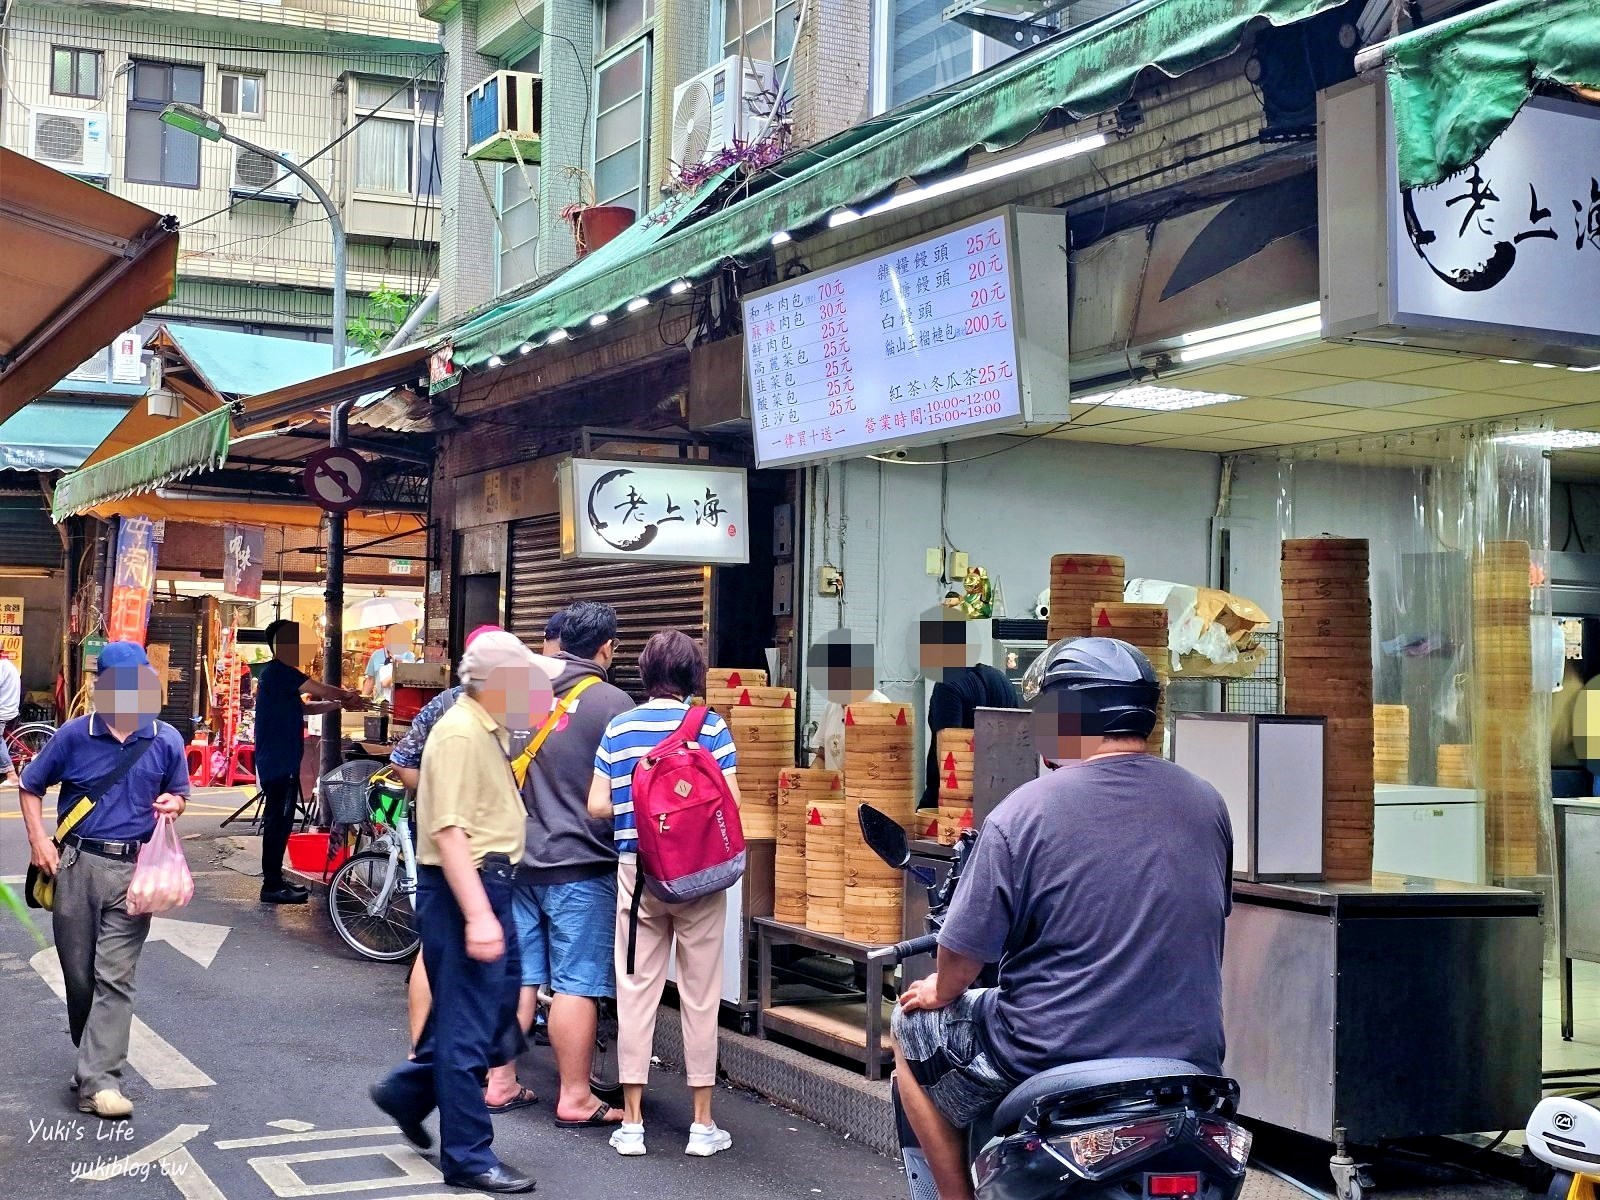 台北銅板小吃美食│老上海包子│虎林街市場A5和牛肉包好狂(菜單價格) - yuki.tw